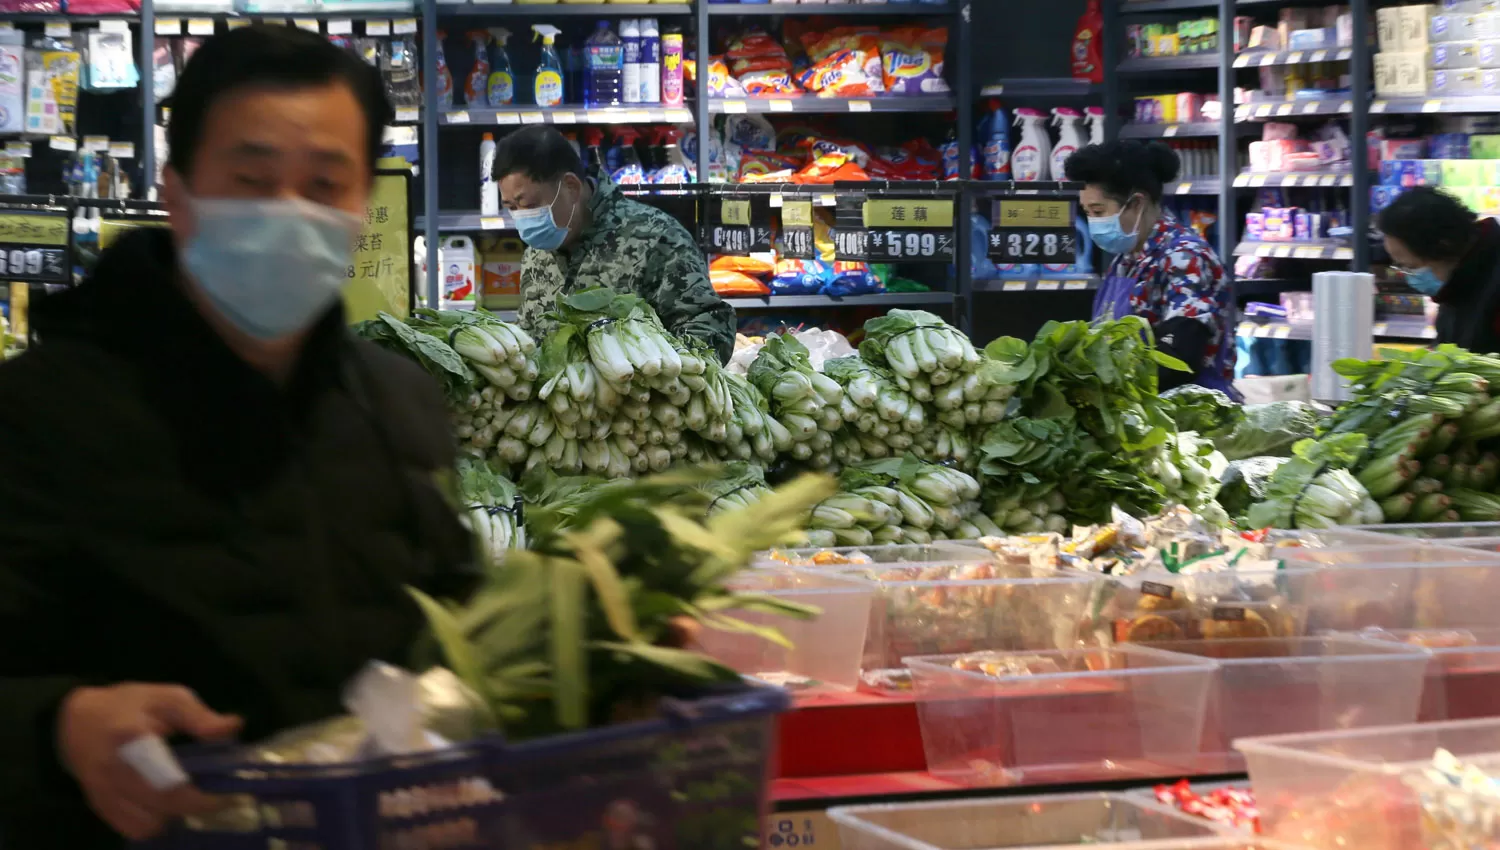 CON BARBIJO. Una imagen que se repite en los supermercados de Wuhan, en China, debido al brote de coronavirus.